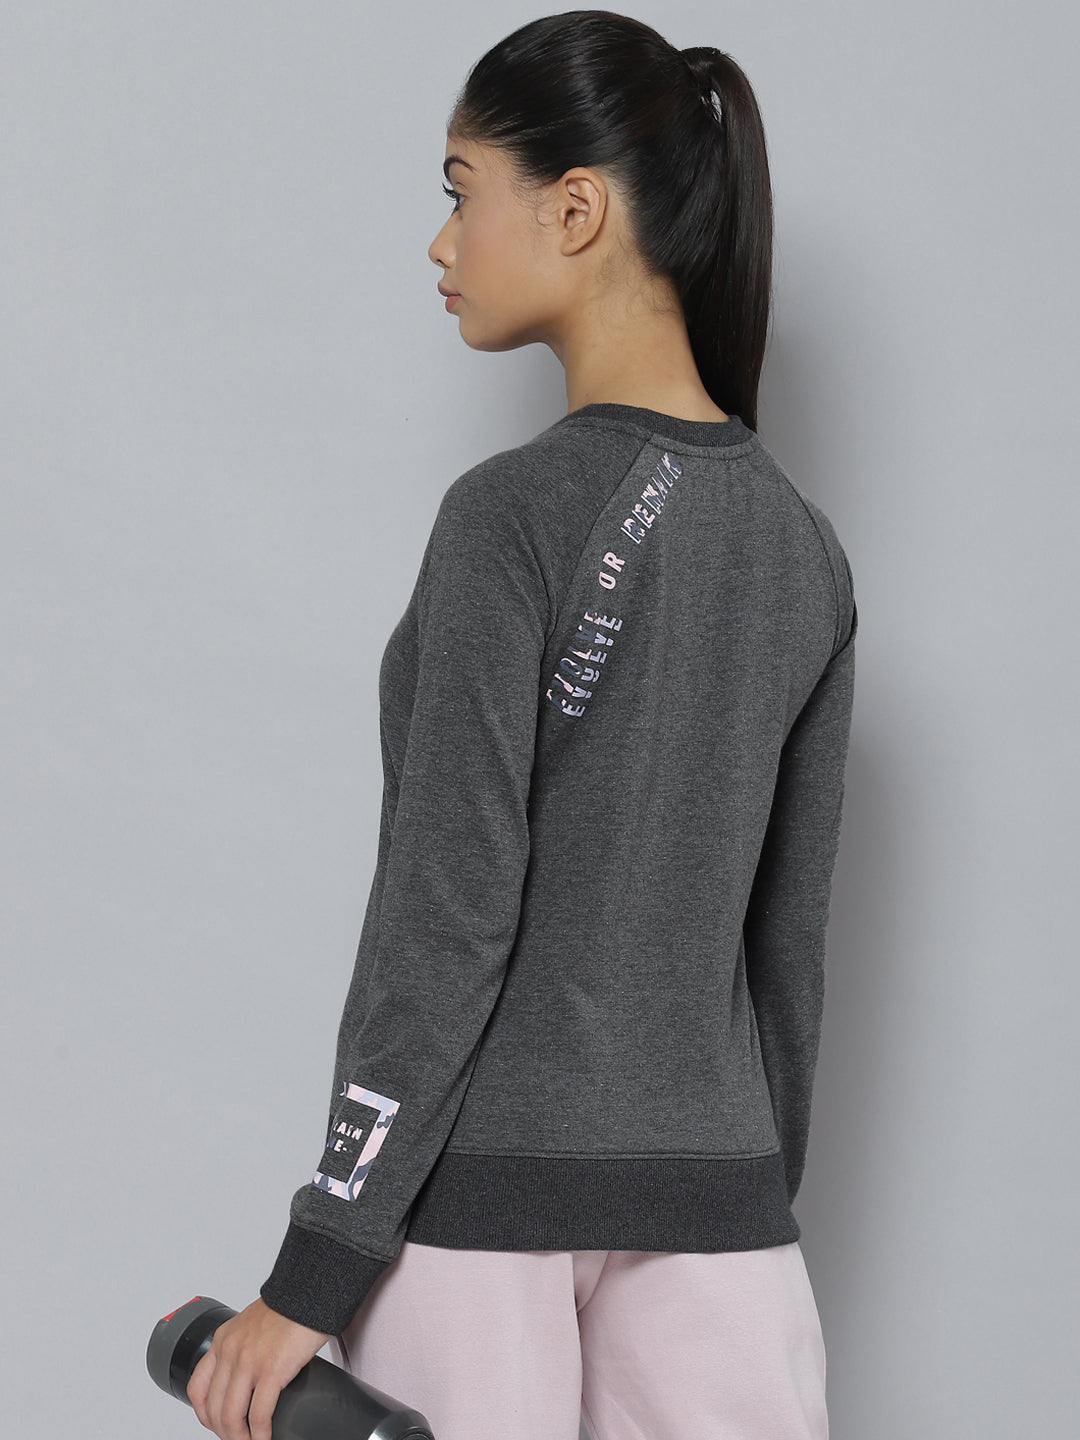 Alcis Women Charcoal Grey Printed Sweatshirt